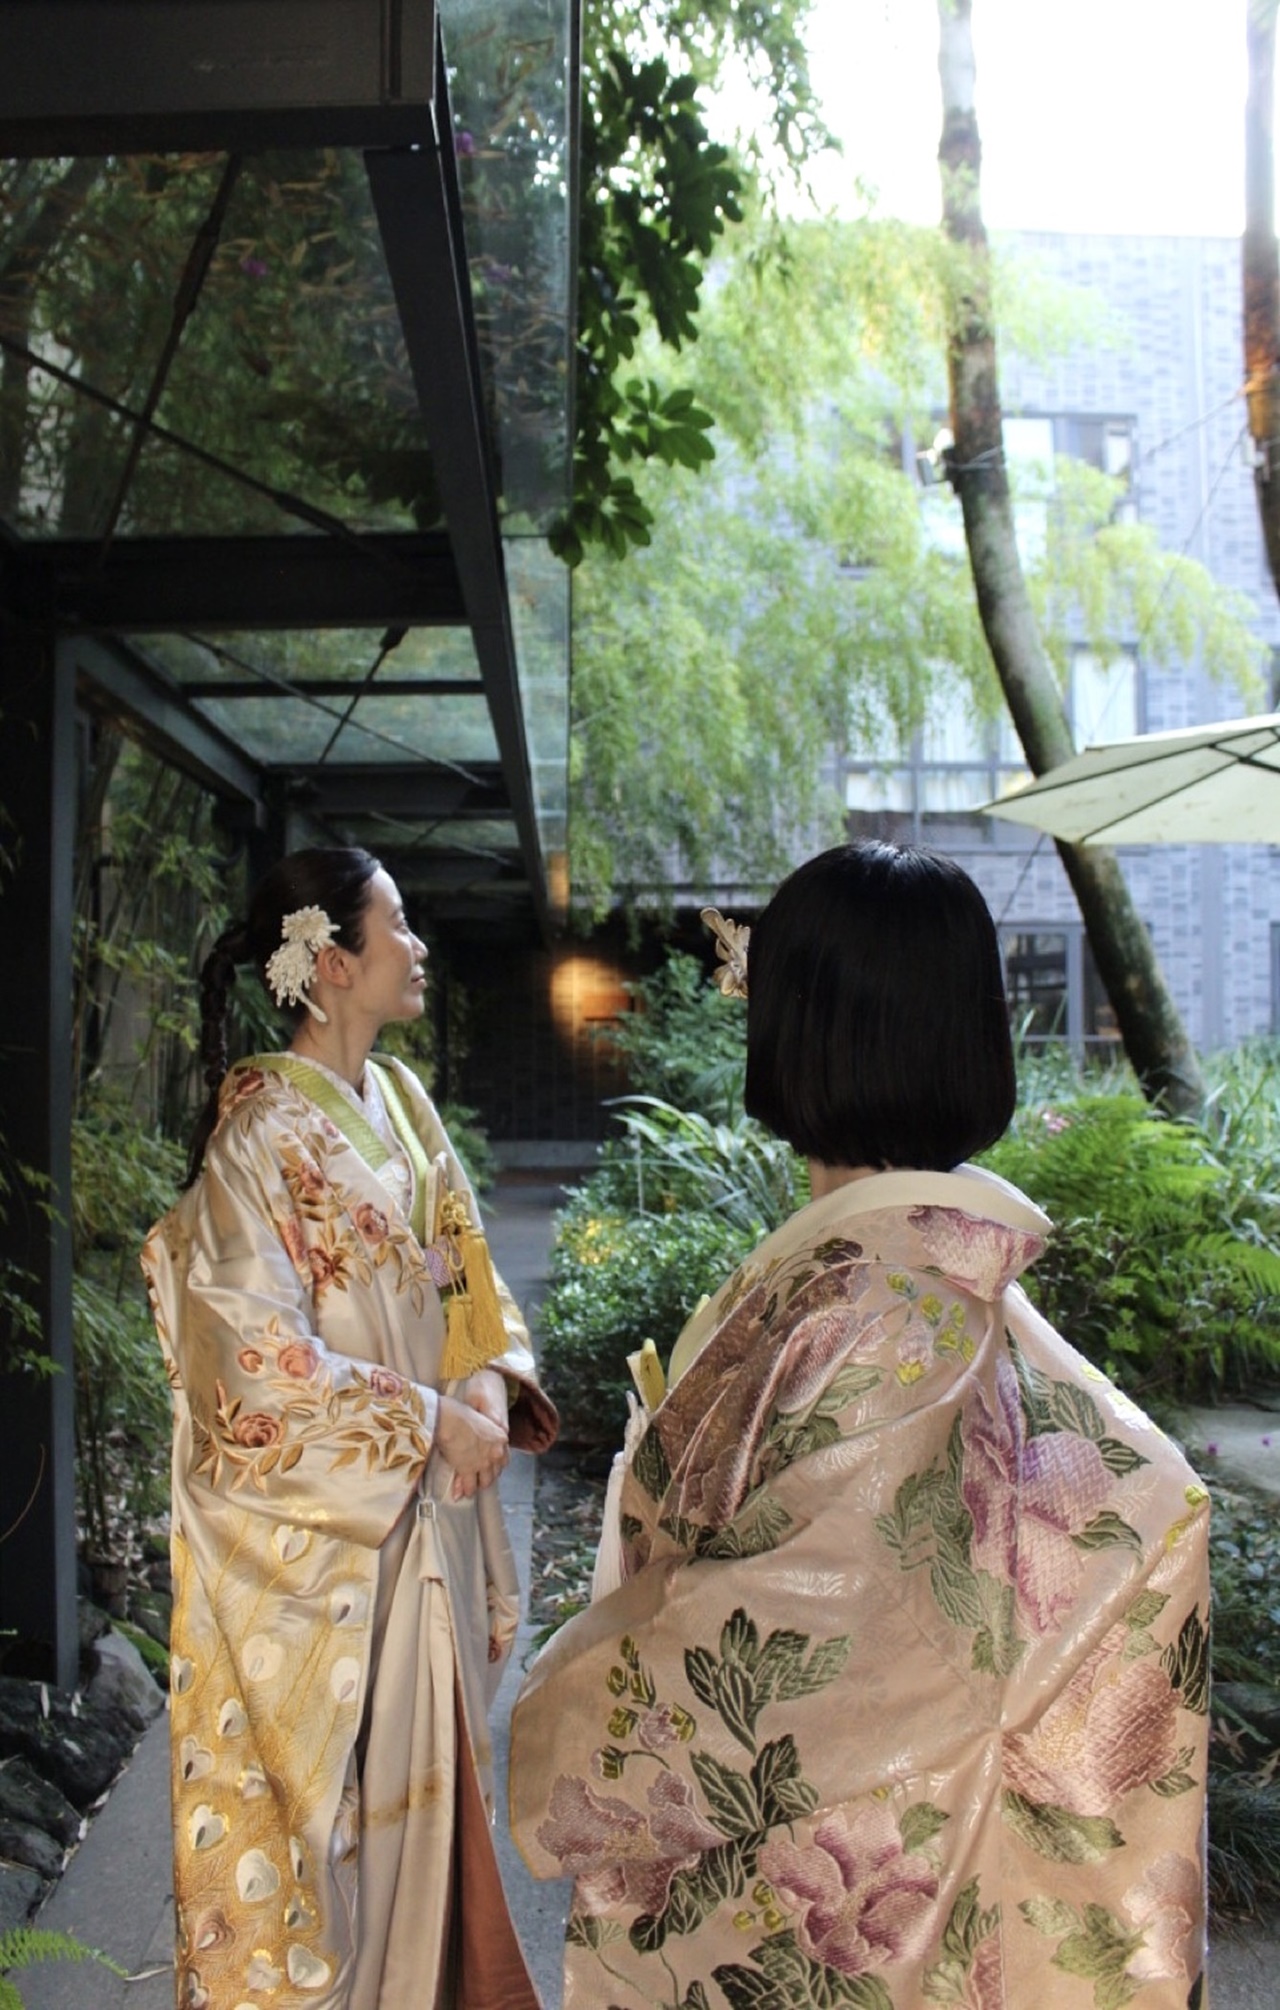 おしゃれで緑溢れる雰囲気が魅力の福岡の人気式場であるウィズ ザ スタイルの結婚式では、ドレスはもちろんのこと、お色直しでの和装スタイルもぴったりです